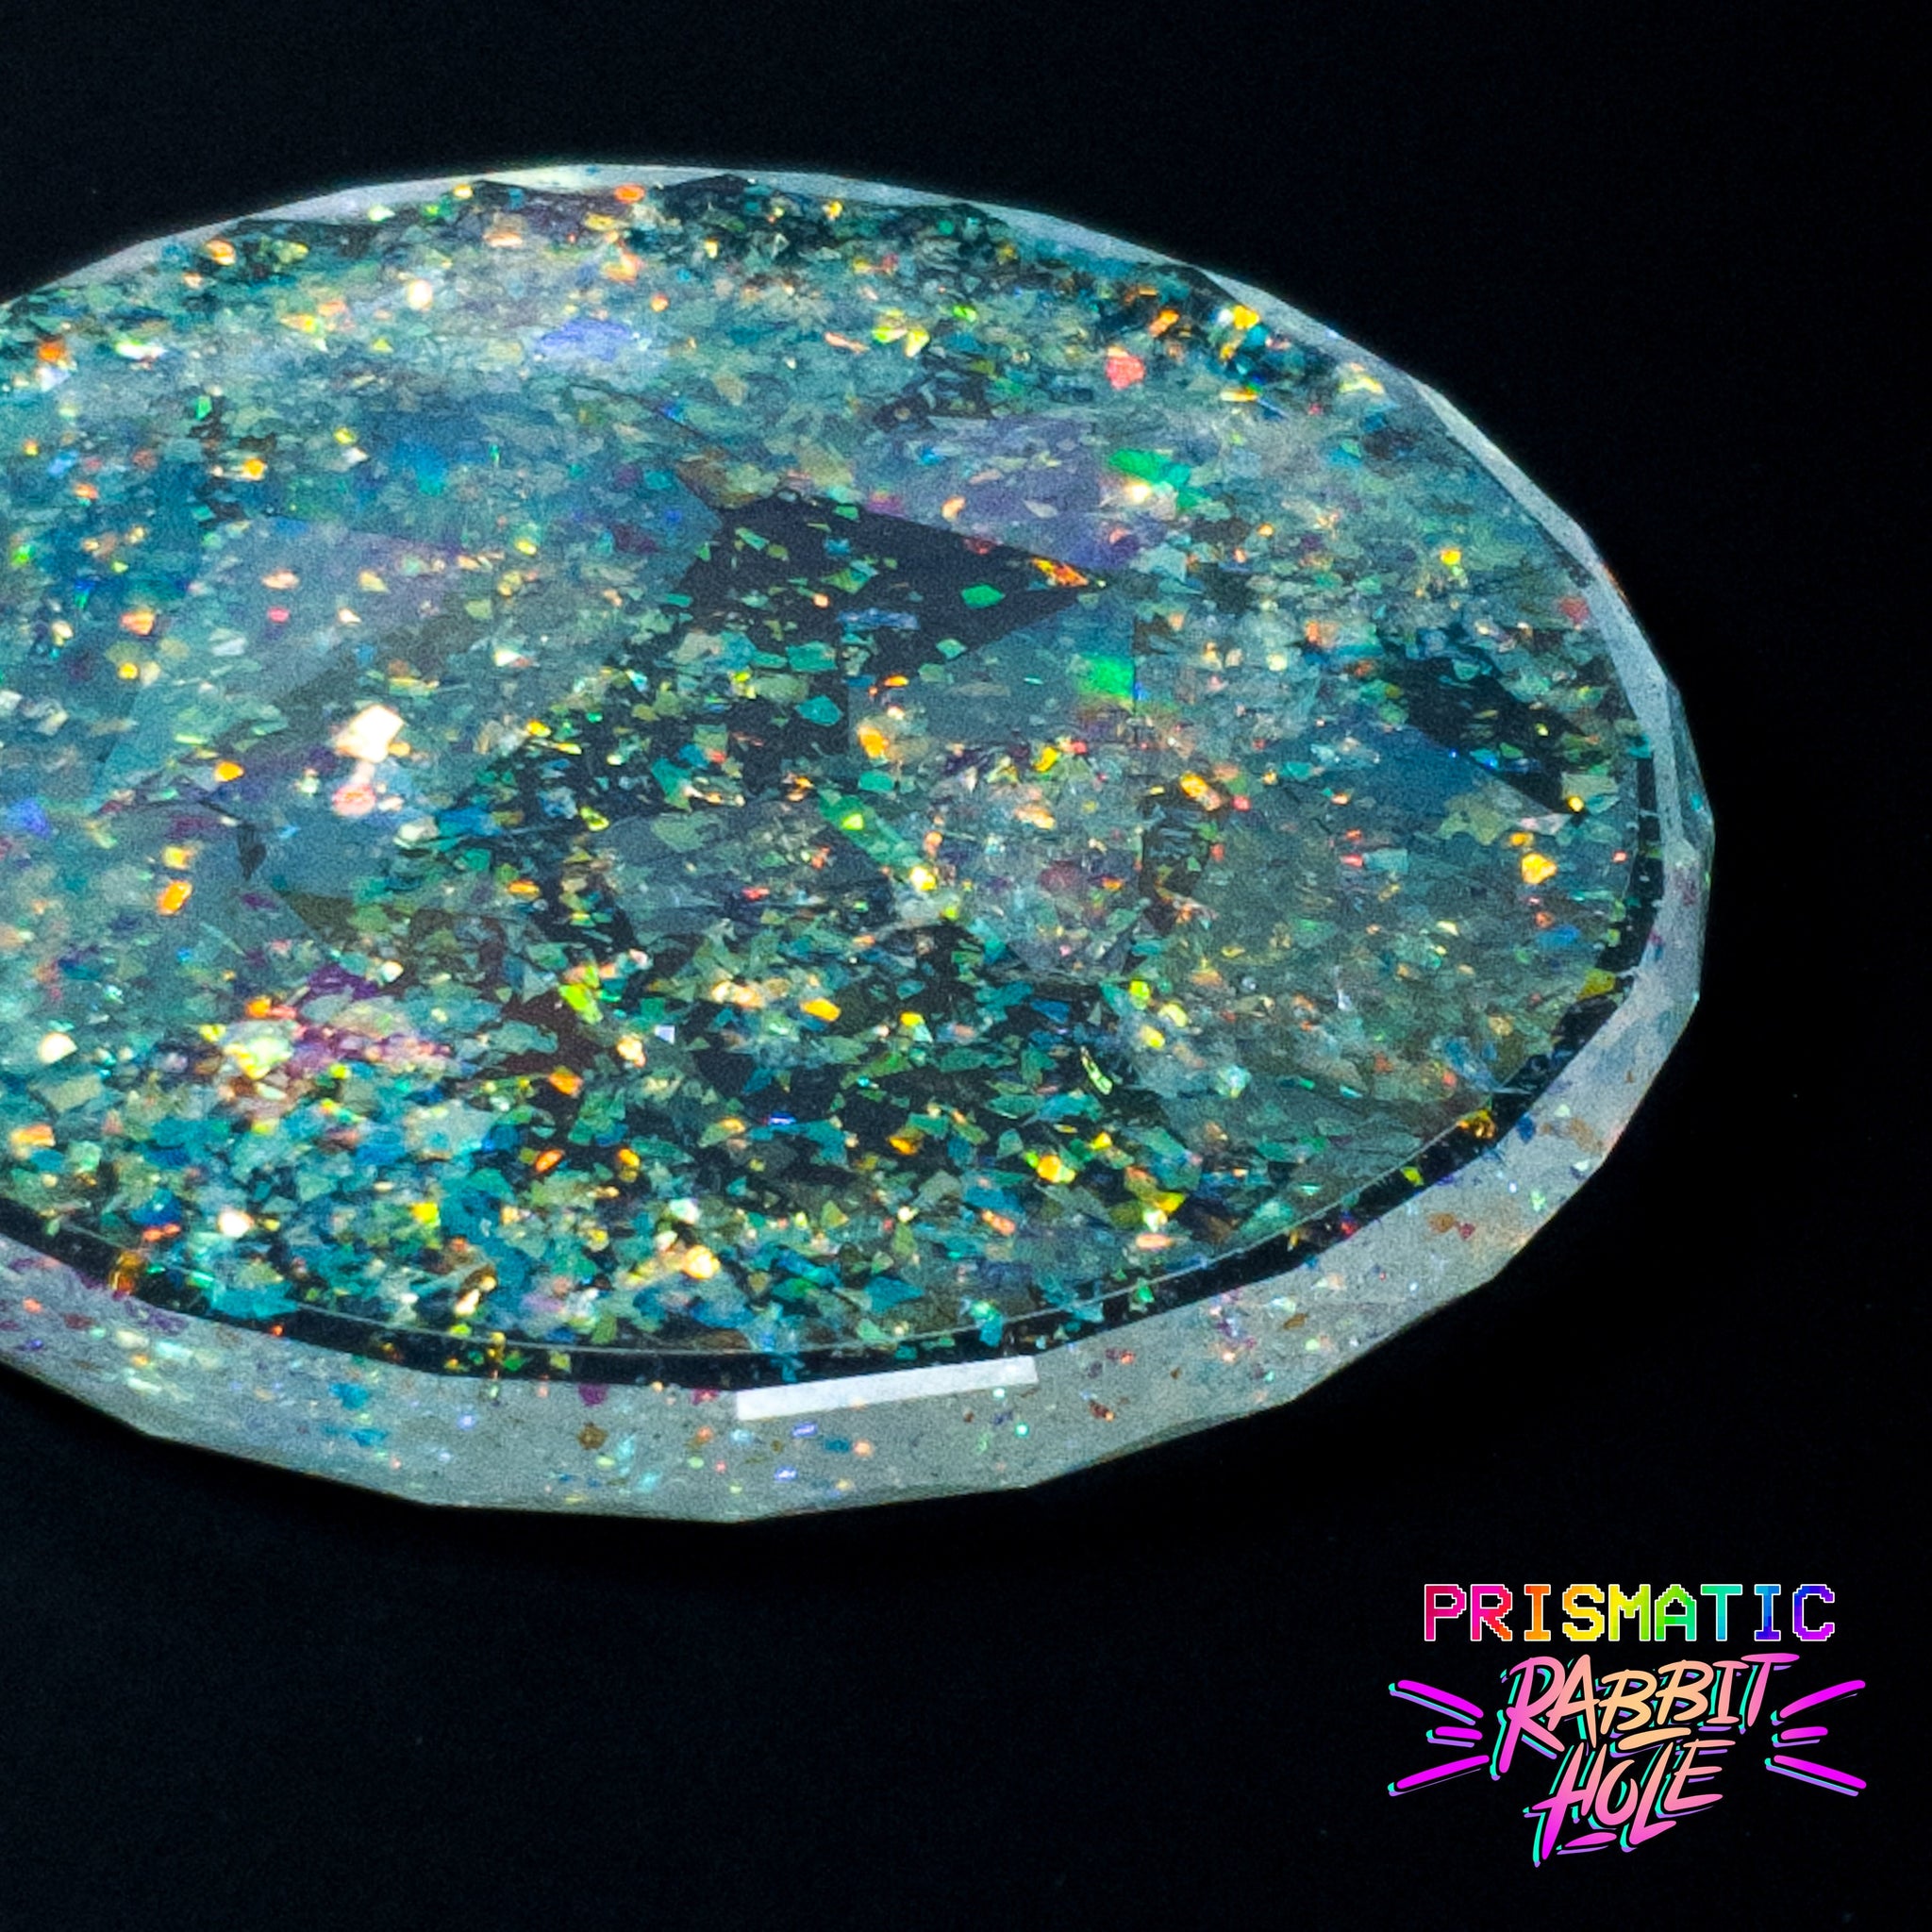 ResinWorld Mosaic Coaster Mold, 1pc Mosaic Molds/Gems Stone Molds + 4 –  ResinWorlds